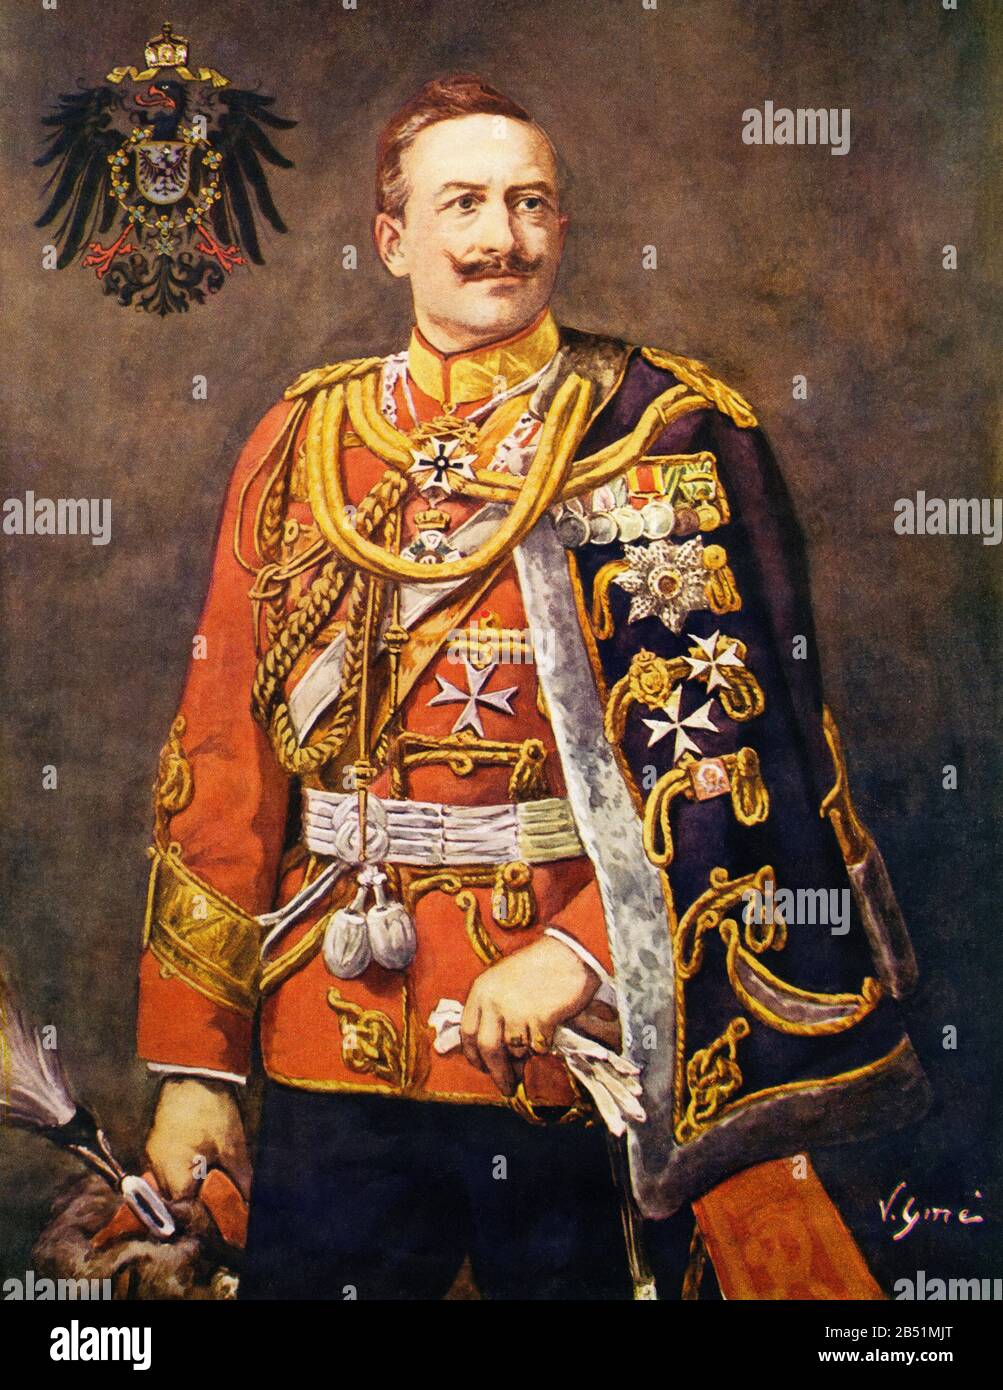 Farbporträt von Wilhelm II. Von Deutschland. Wilhelm II. Friedrich Wilhelm Viktor Albrecht von Preßen (Berlin 1859 - Doorn 1941), war der letzte Kaiser oder Stockfoto